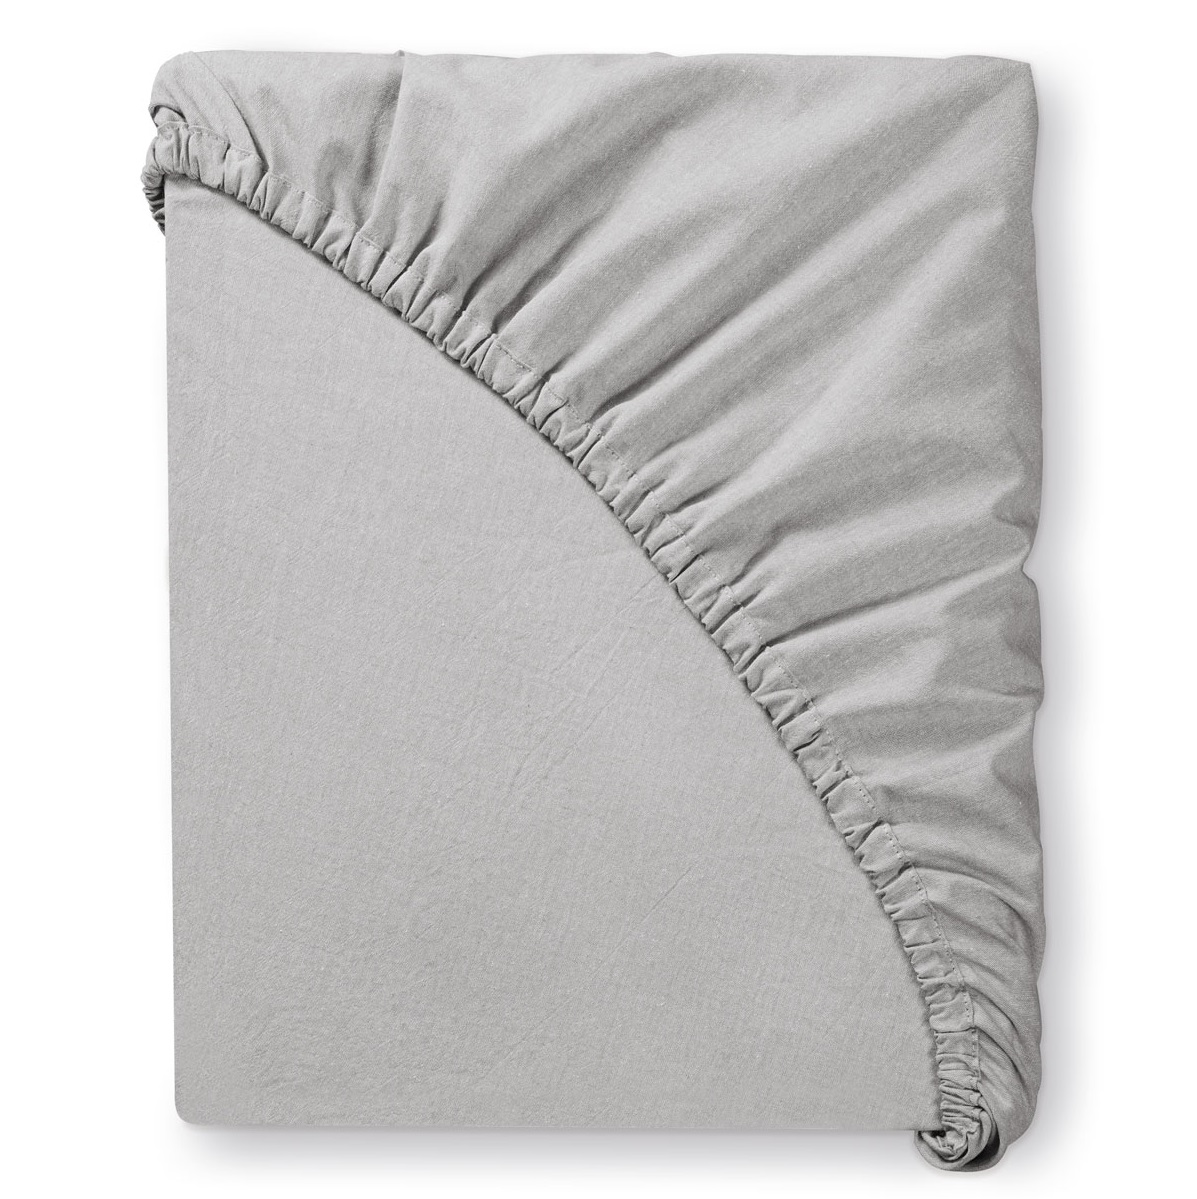 Комплект постельного белья Prime Prive Смоген Двуспальный кинг сайз светло-серый, размер Кинг сайз - фото 11